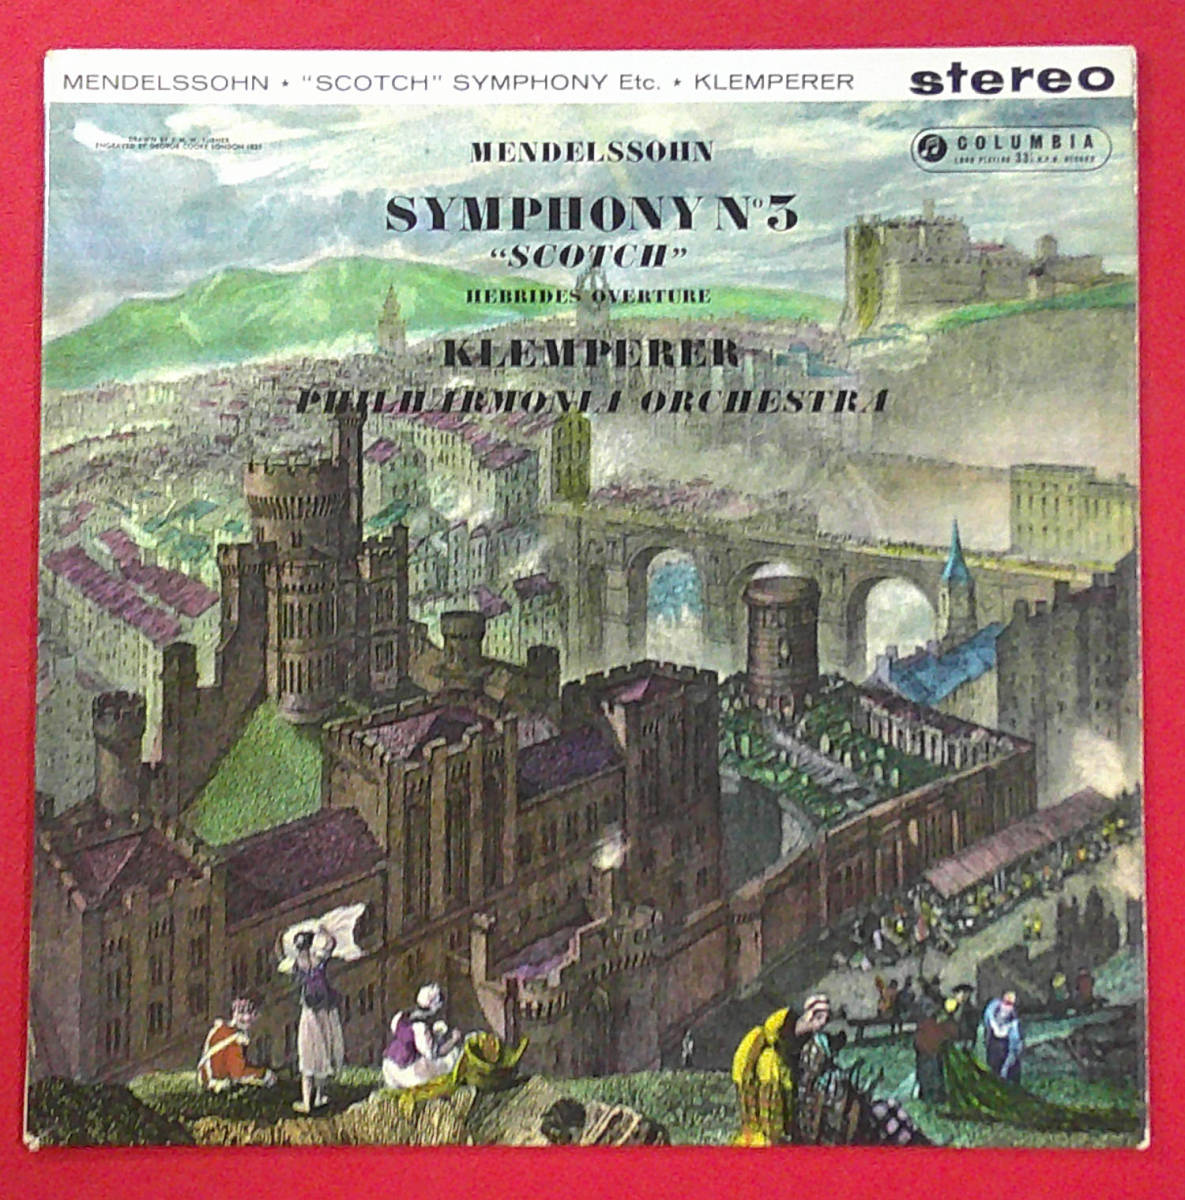 極美 英SAX 2342 B&S メンデルスゾーン交響曲第3番 クレンペラー